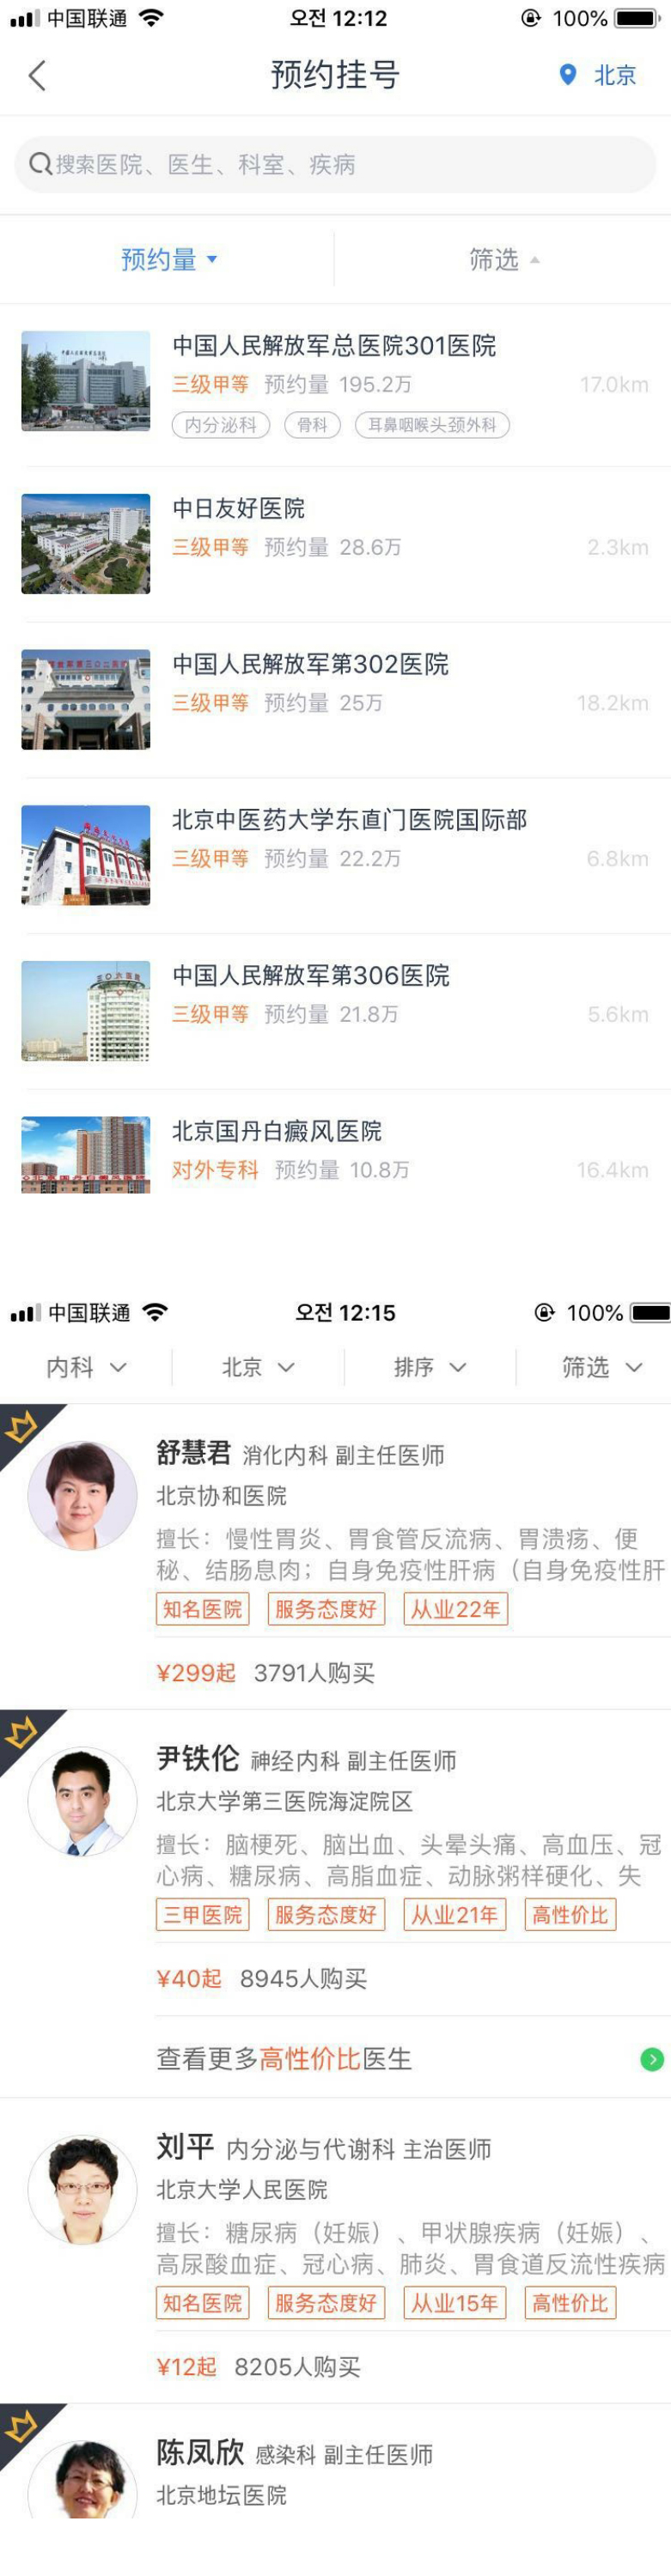 그림 1.웨이이의 병원 예약, 춘위이성의 모바일문진 APP 화면 (예시)